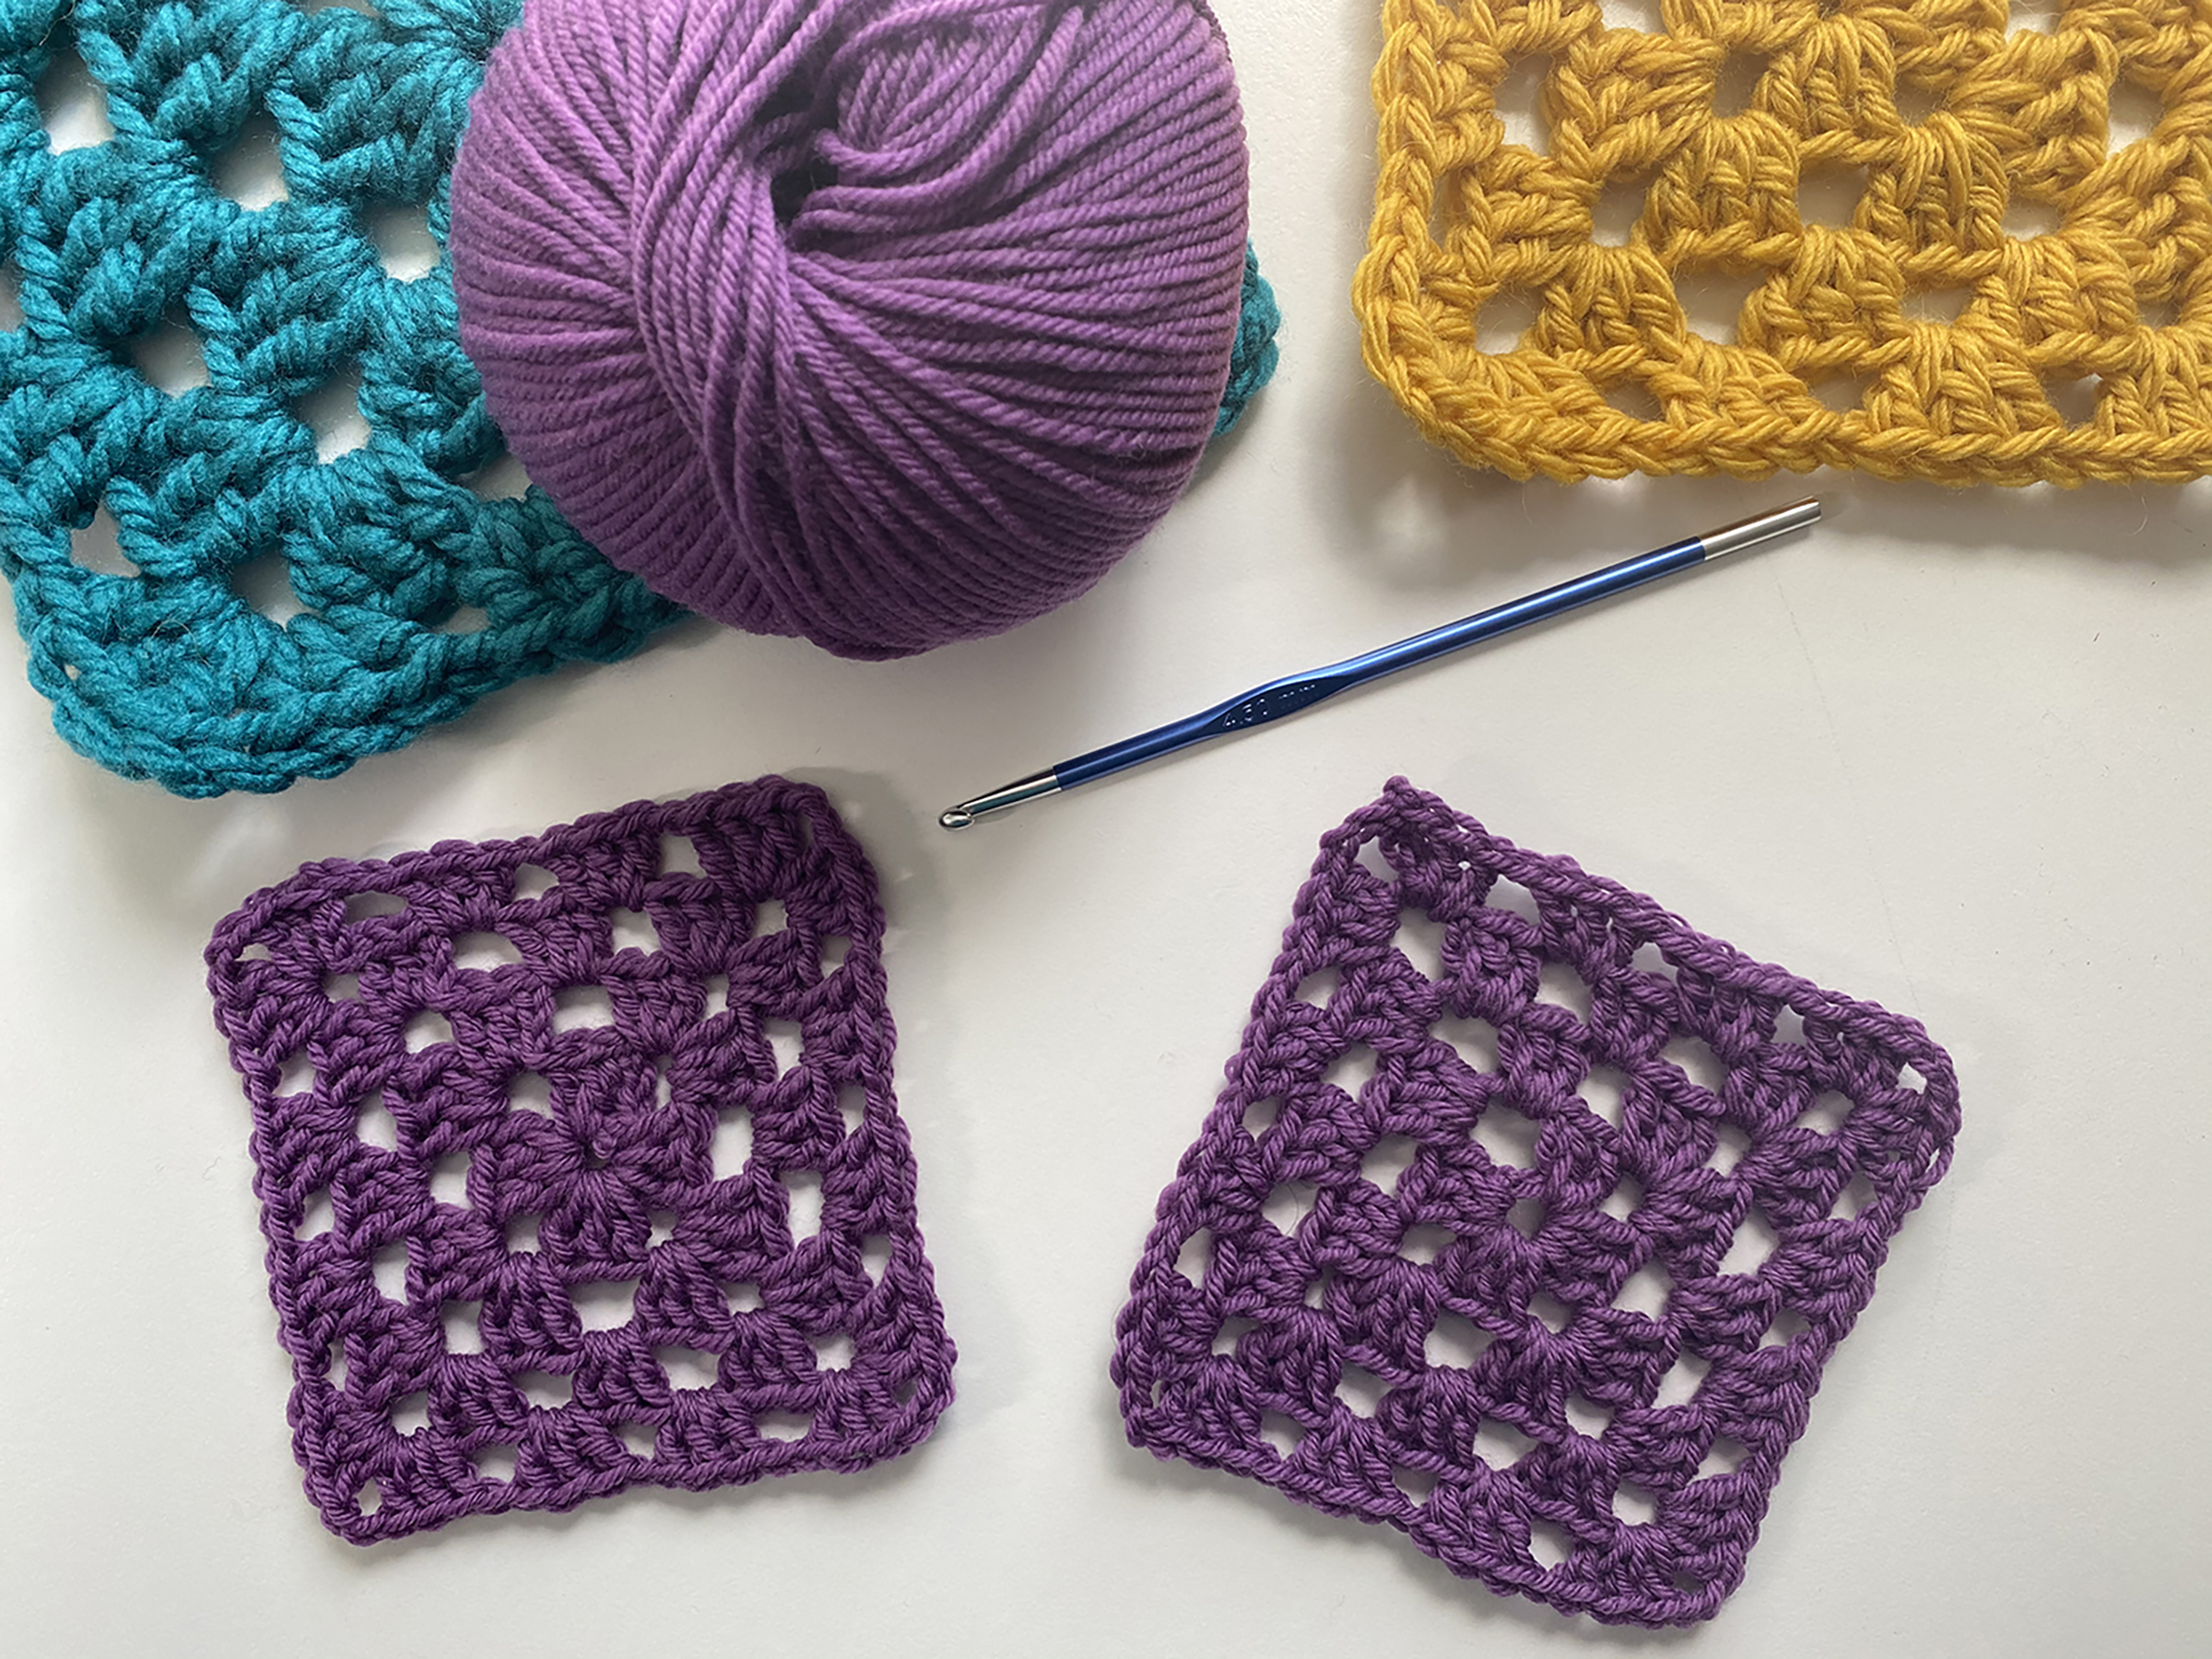 The Granny Square Book  Creative Crochet Corner